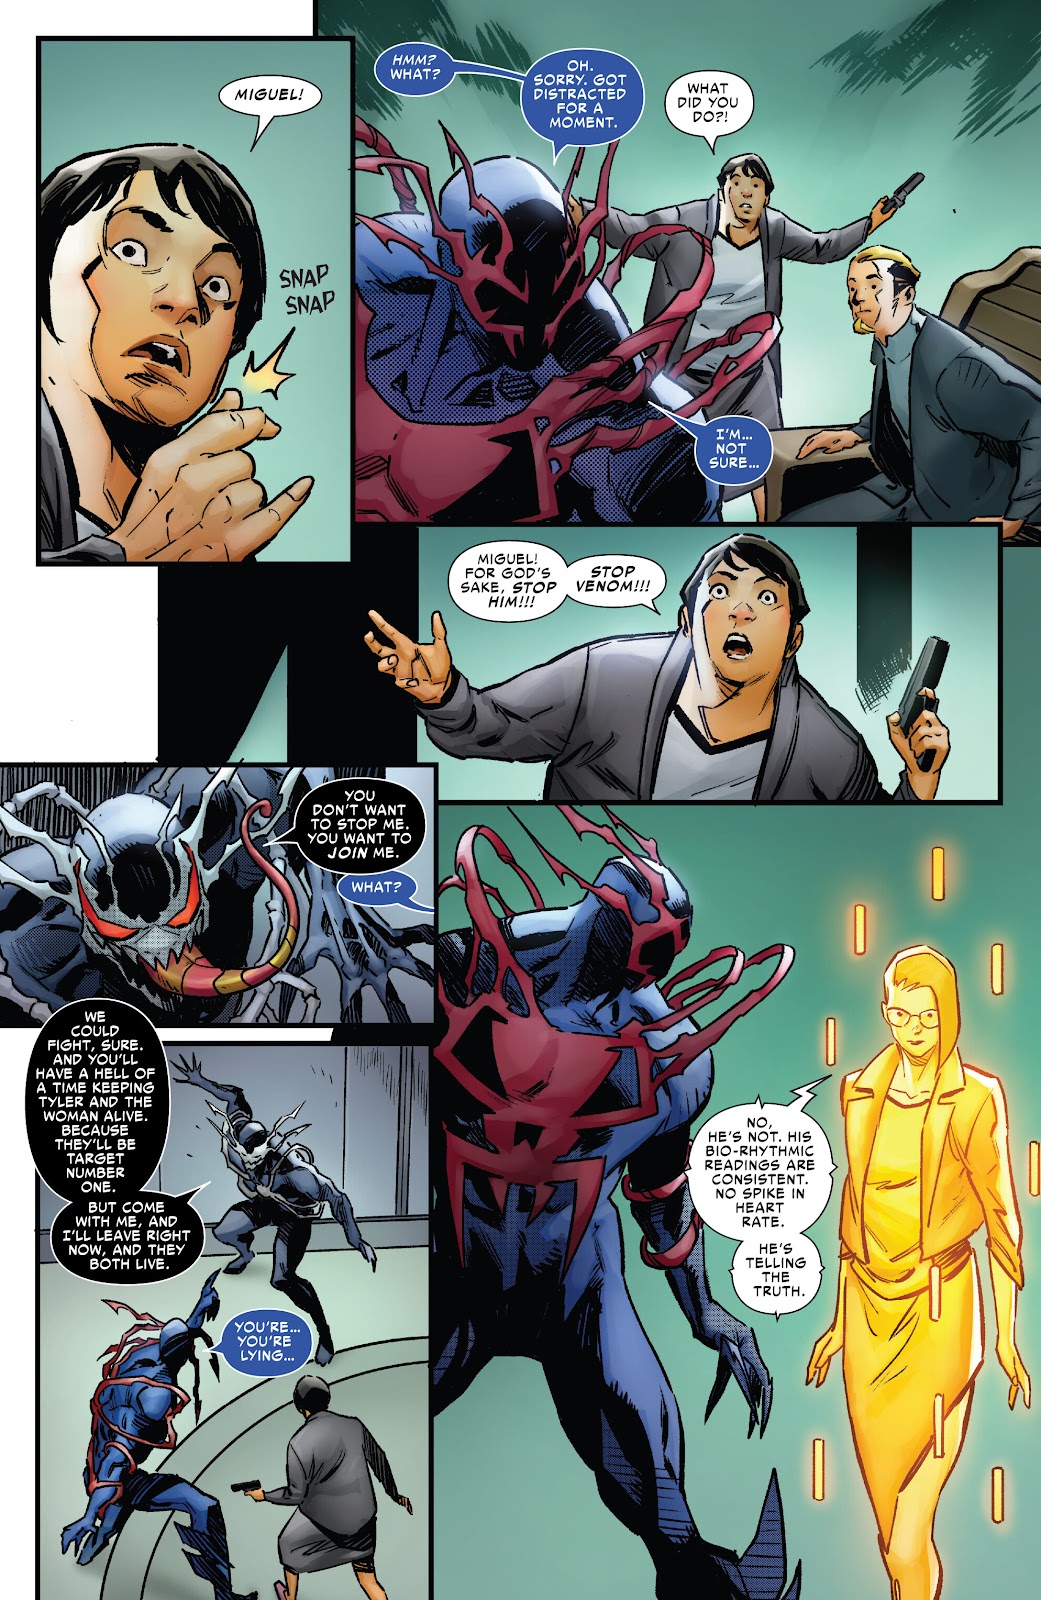 Symbiote Spider-Man 2099 issue 2 - Page 23